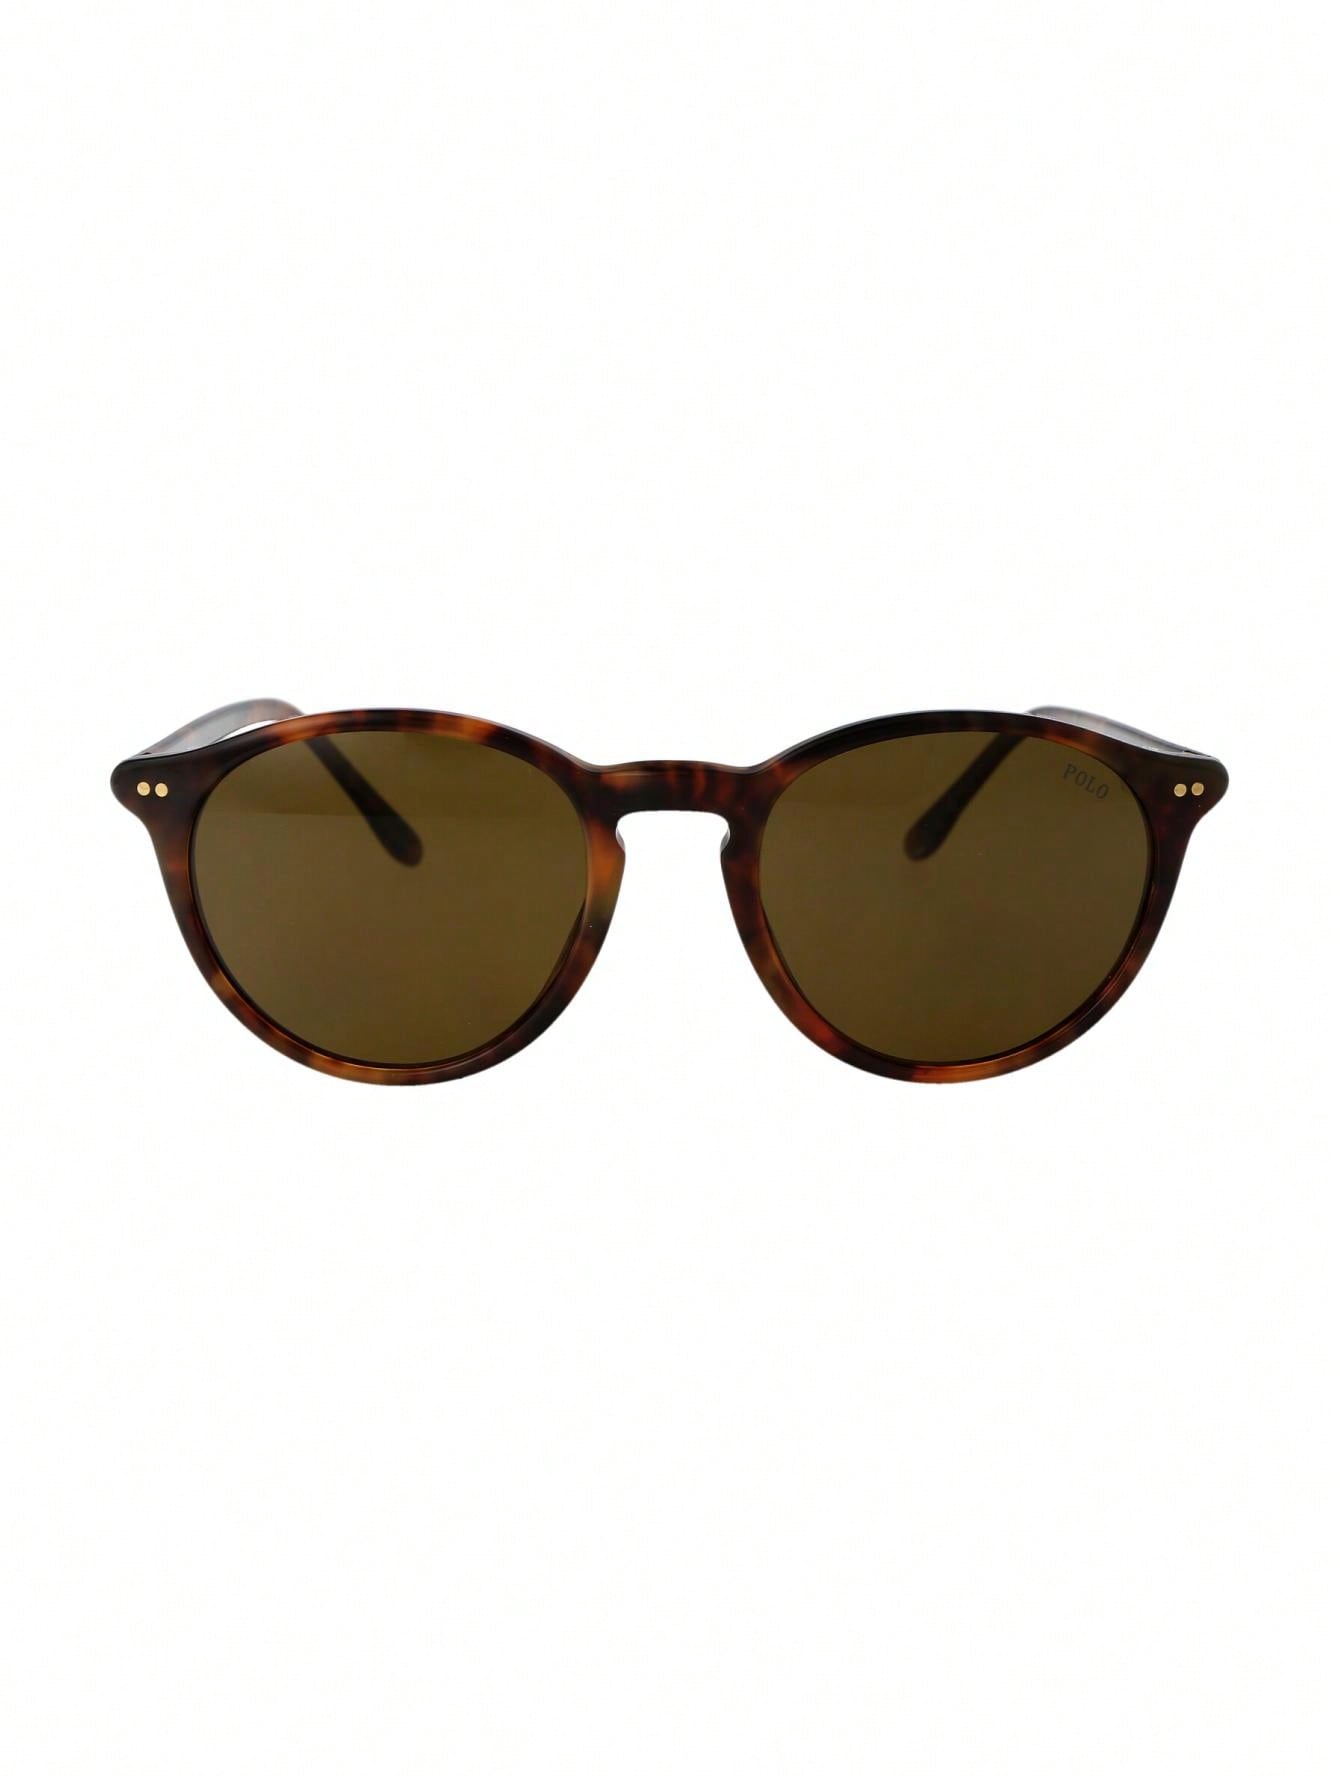 Мужские солнцезащитные очки Polo Ralph Lauren DECOR 0PH4193501773, многоцветный прямоугольные матовые черные серебряные зеркальные солнцезащитные очки polo ralph lauren черный